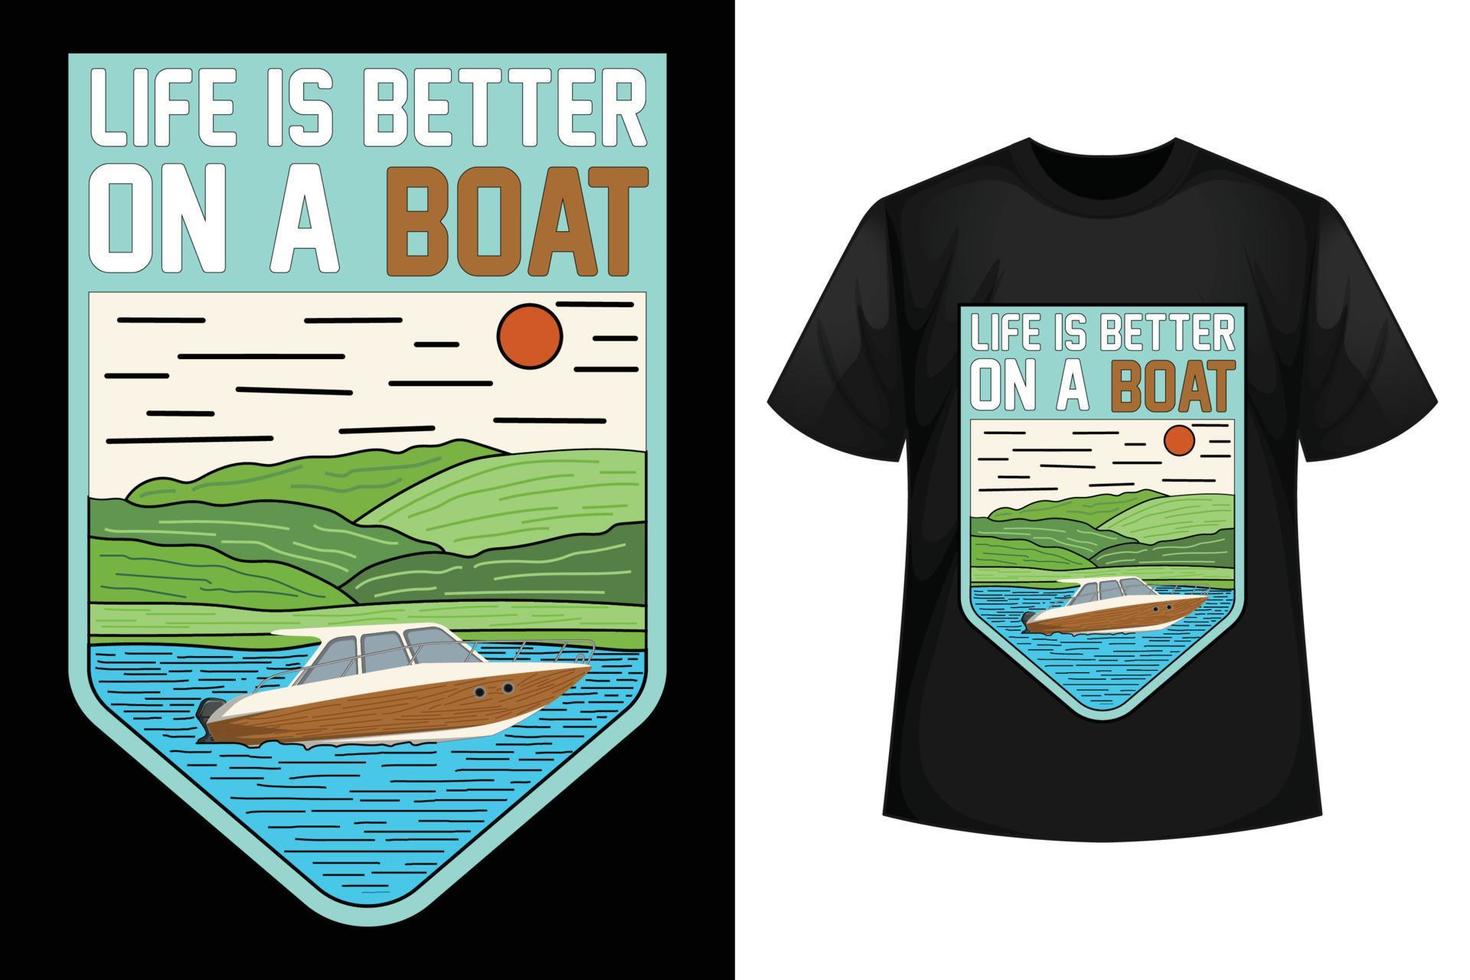 Das Leben ist besser auf einem Boot - Designvorlage für Boot-T-Shirts. vektor